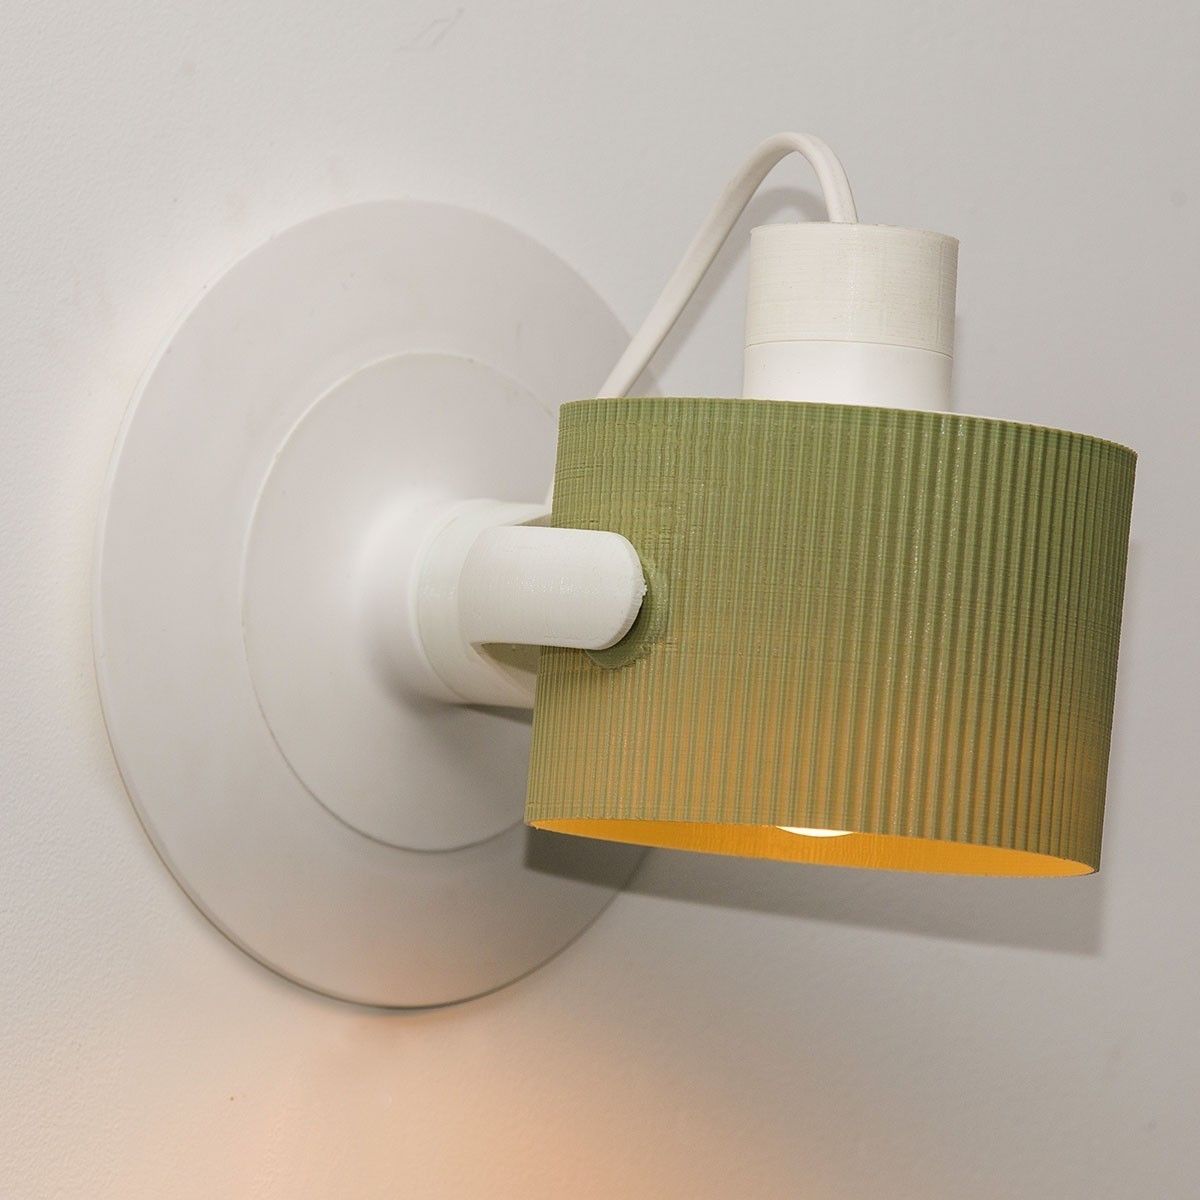 Z-2.jpg Télécharger le fichier STL gratuit Z-Wall Lamp: Wall lamp • Objet pour impression 3D, EUMAKERS